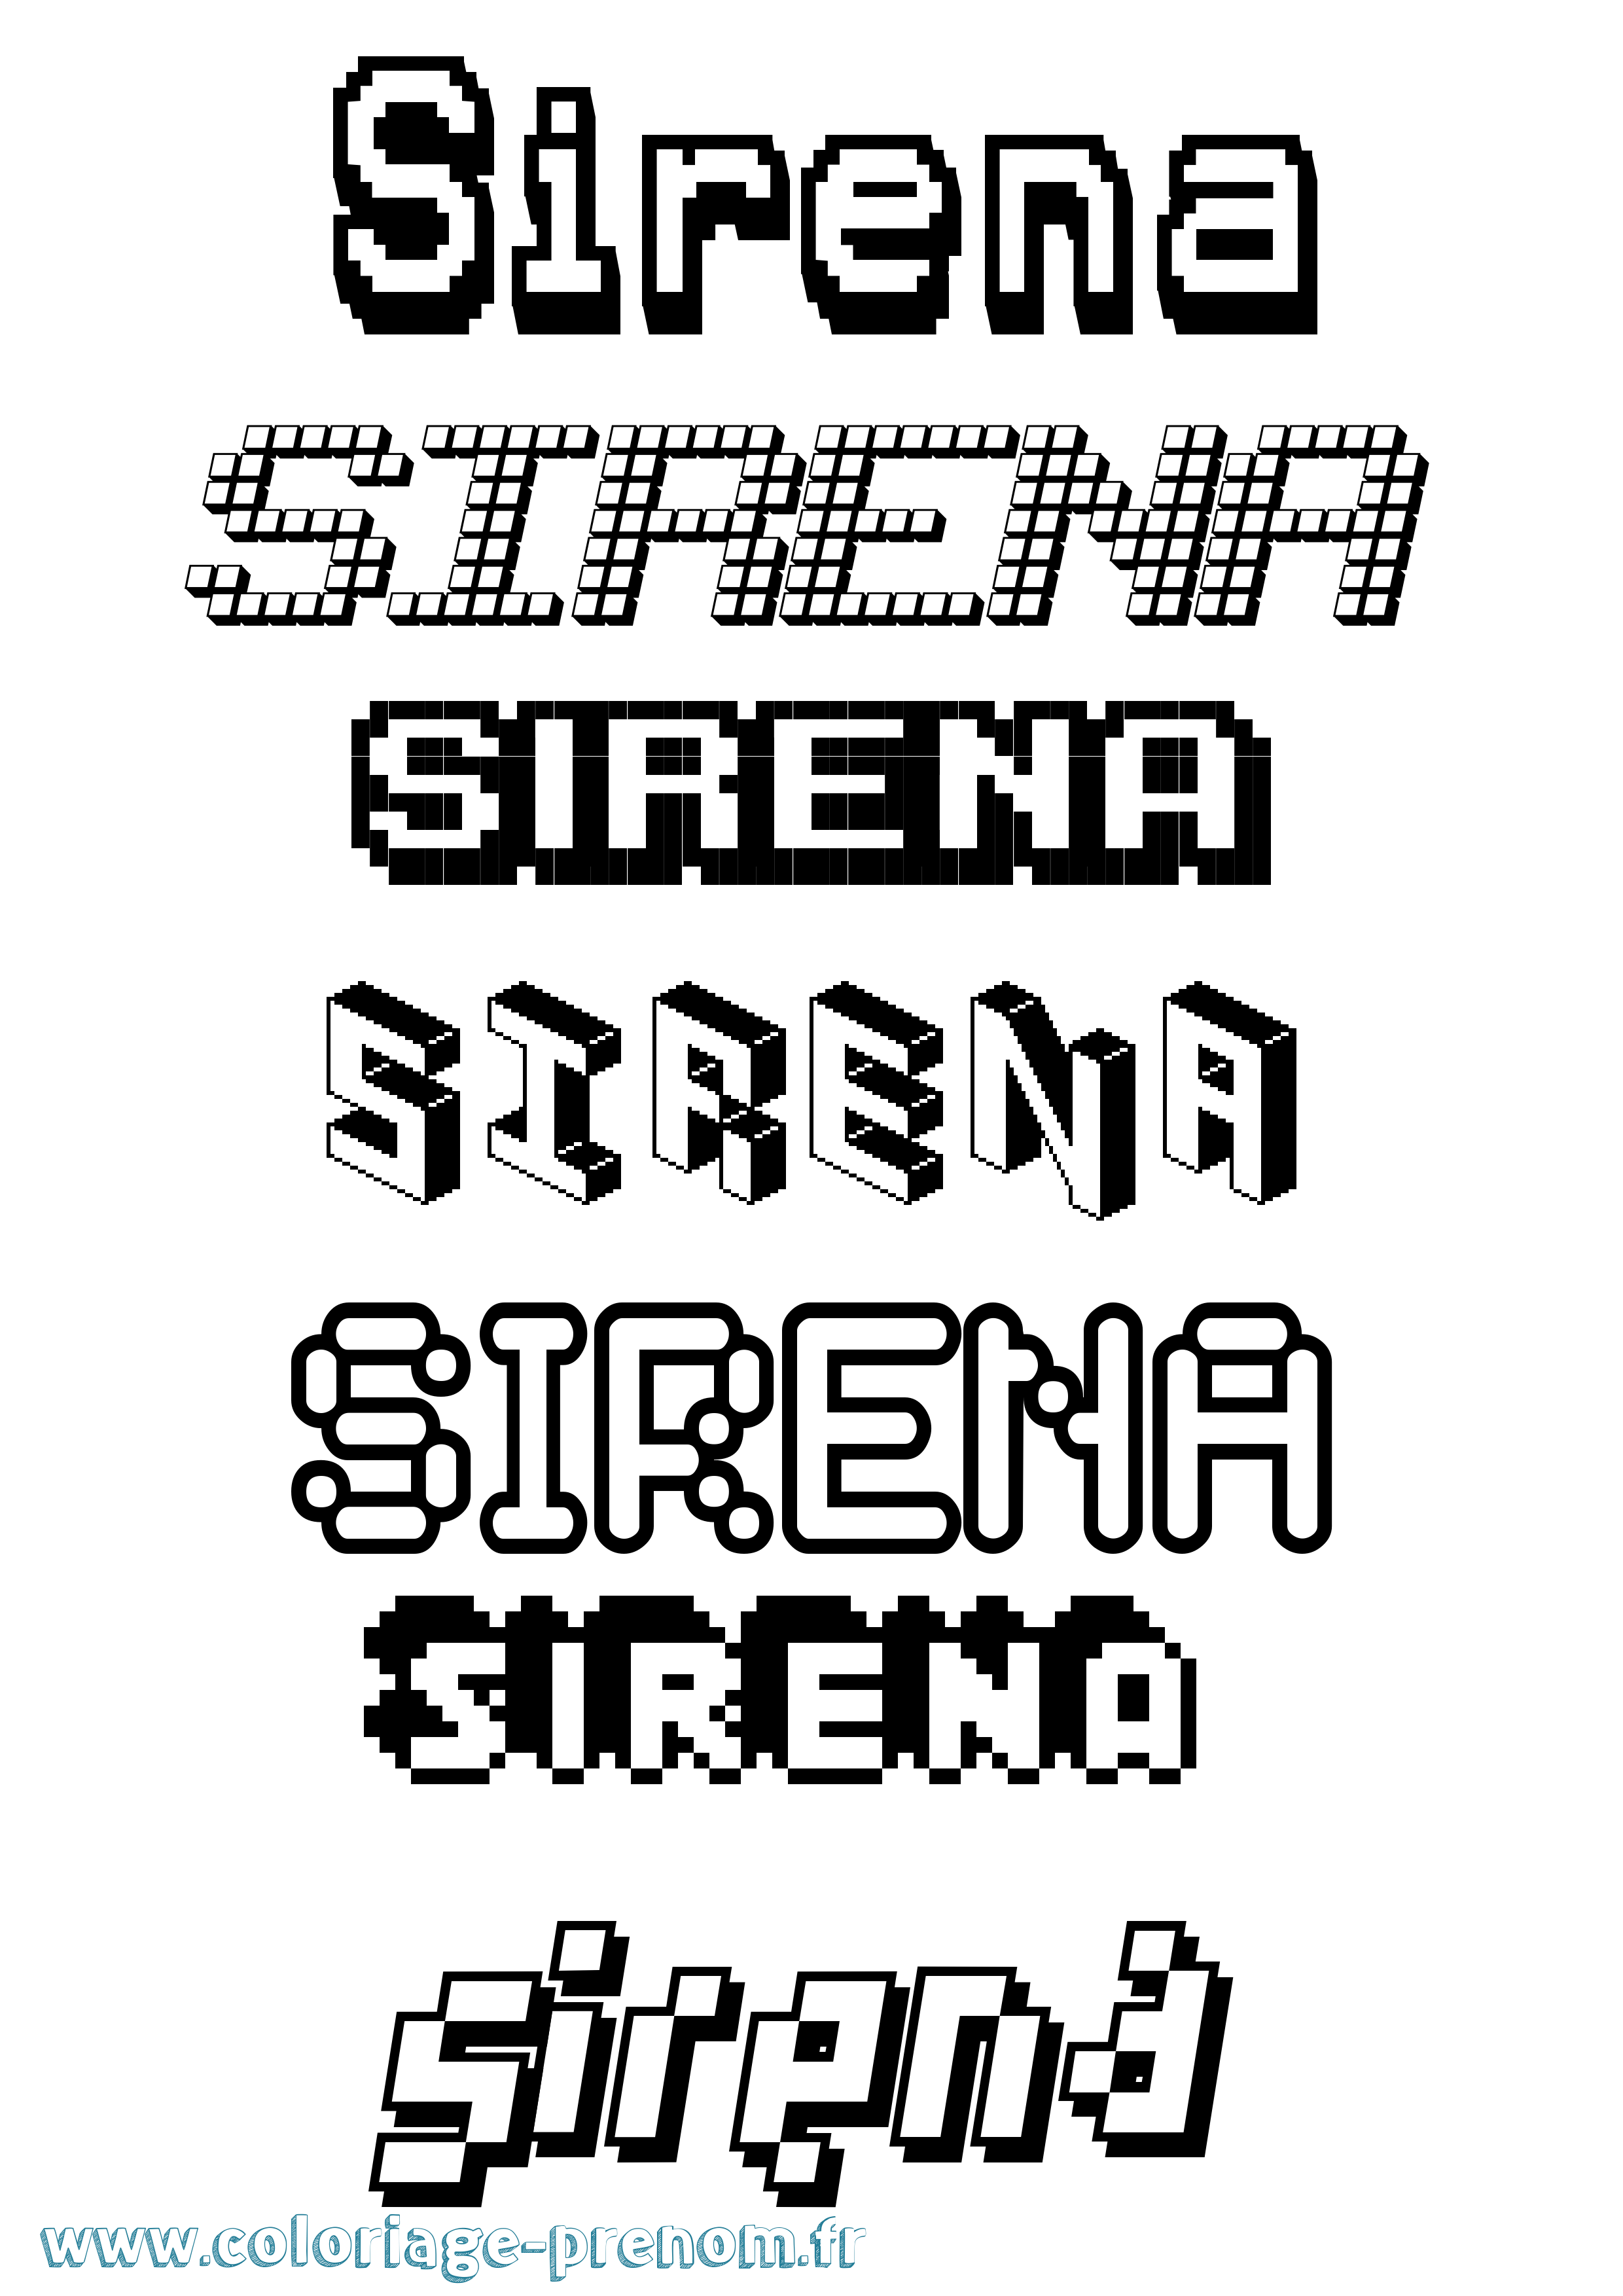 Coloriage prénom Sirena Pixel